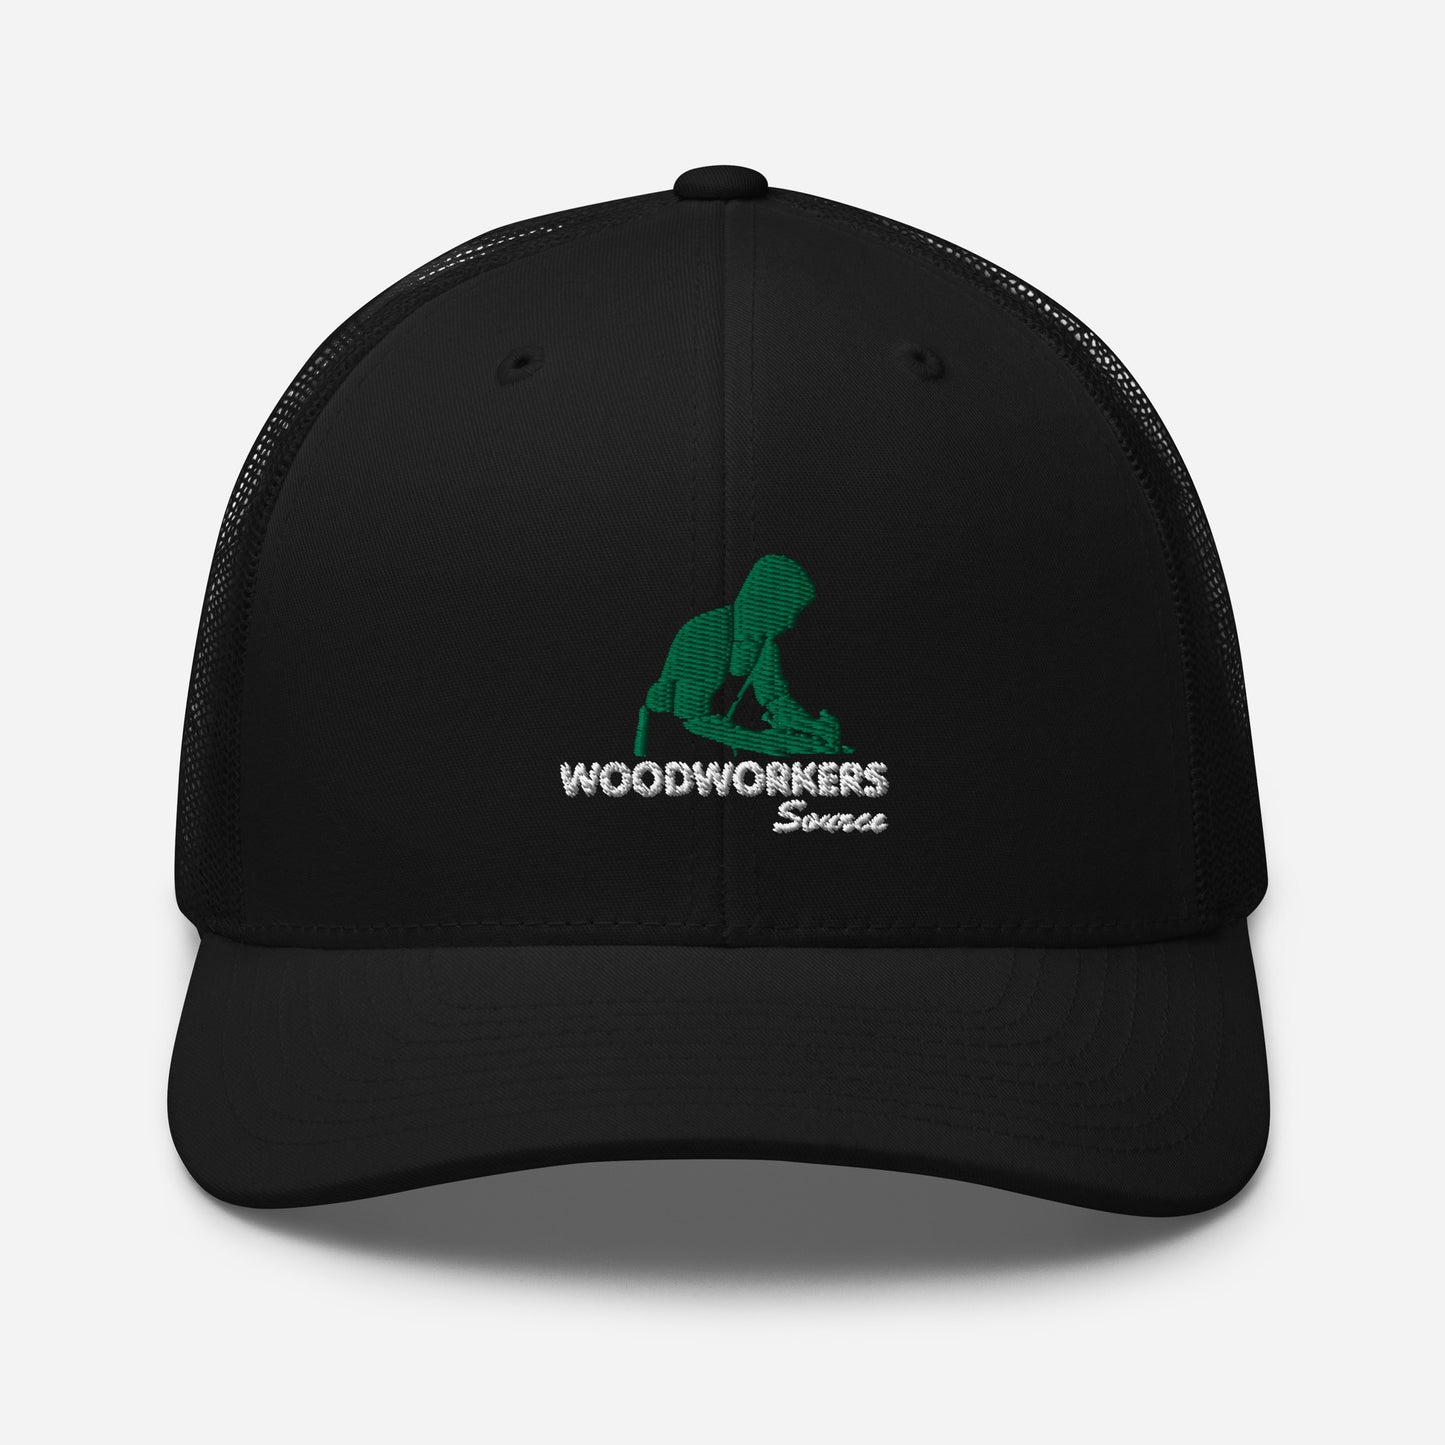 Woodworkers Source Trucker Hat